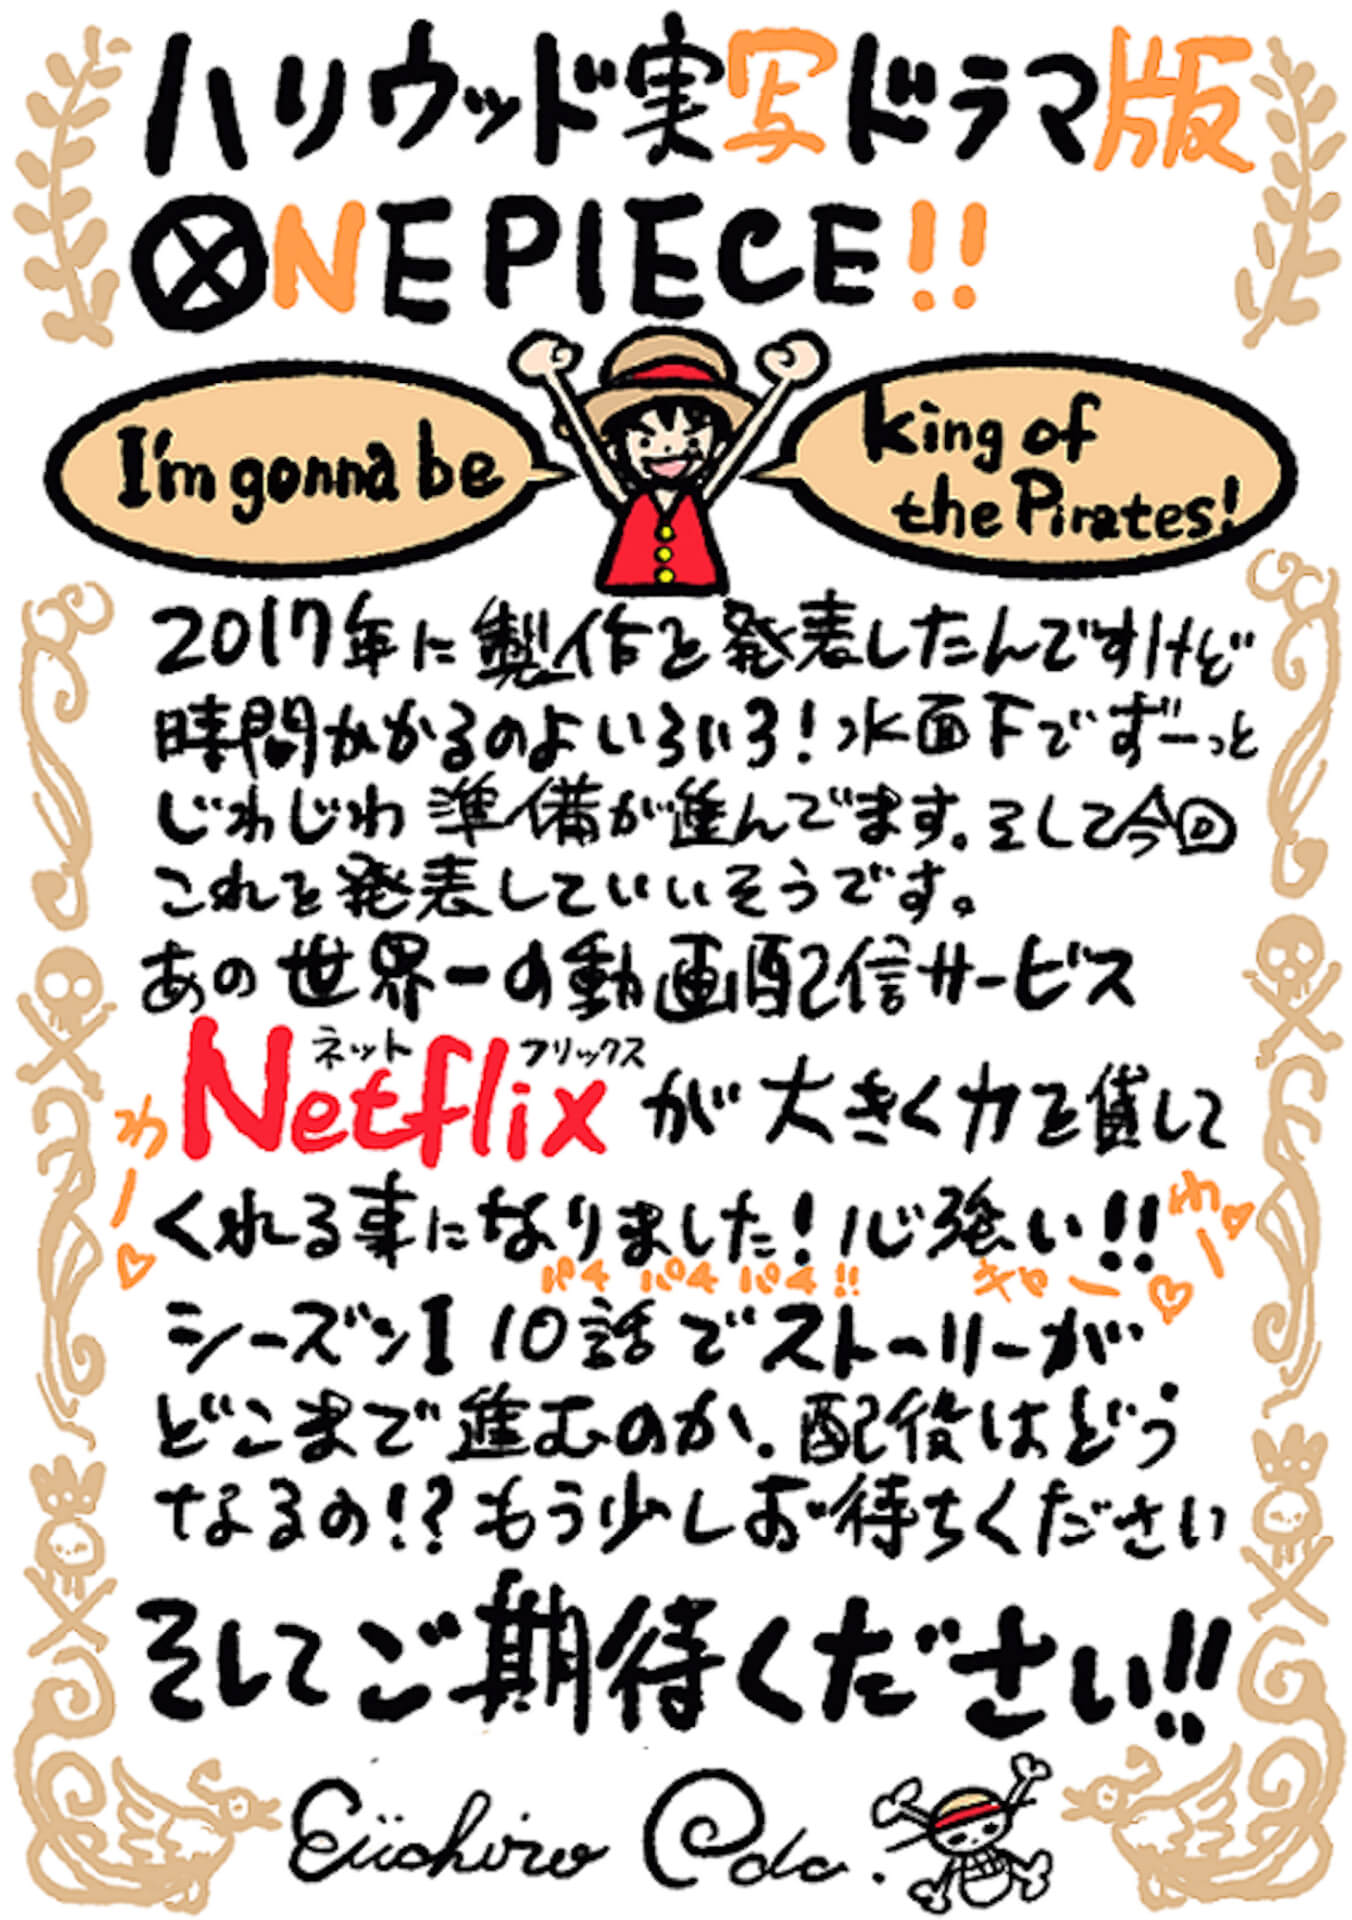 One Piece がついにnetflixでハリウッド実写ドラマ化 エグゼクティブ プロデューサーに尾田栄一郎 時間かかるのよいろいろ Qetic